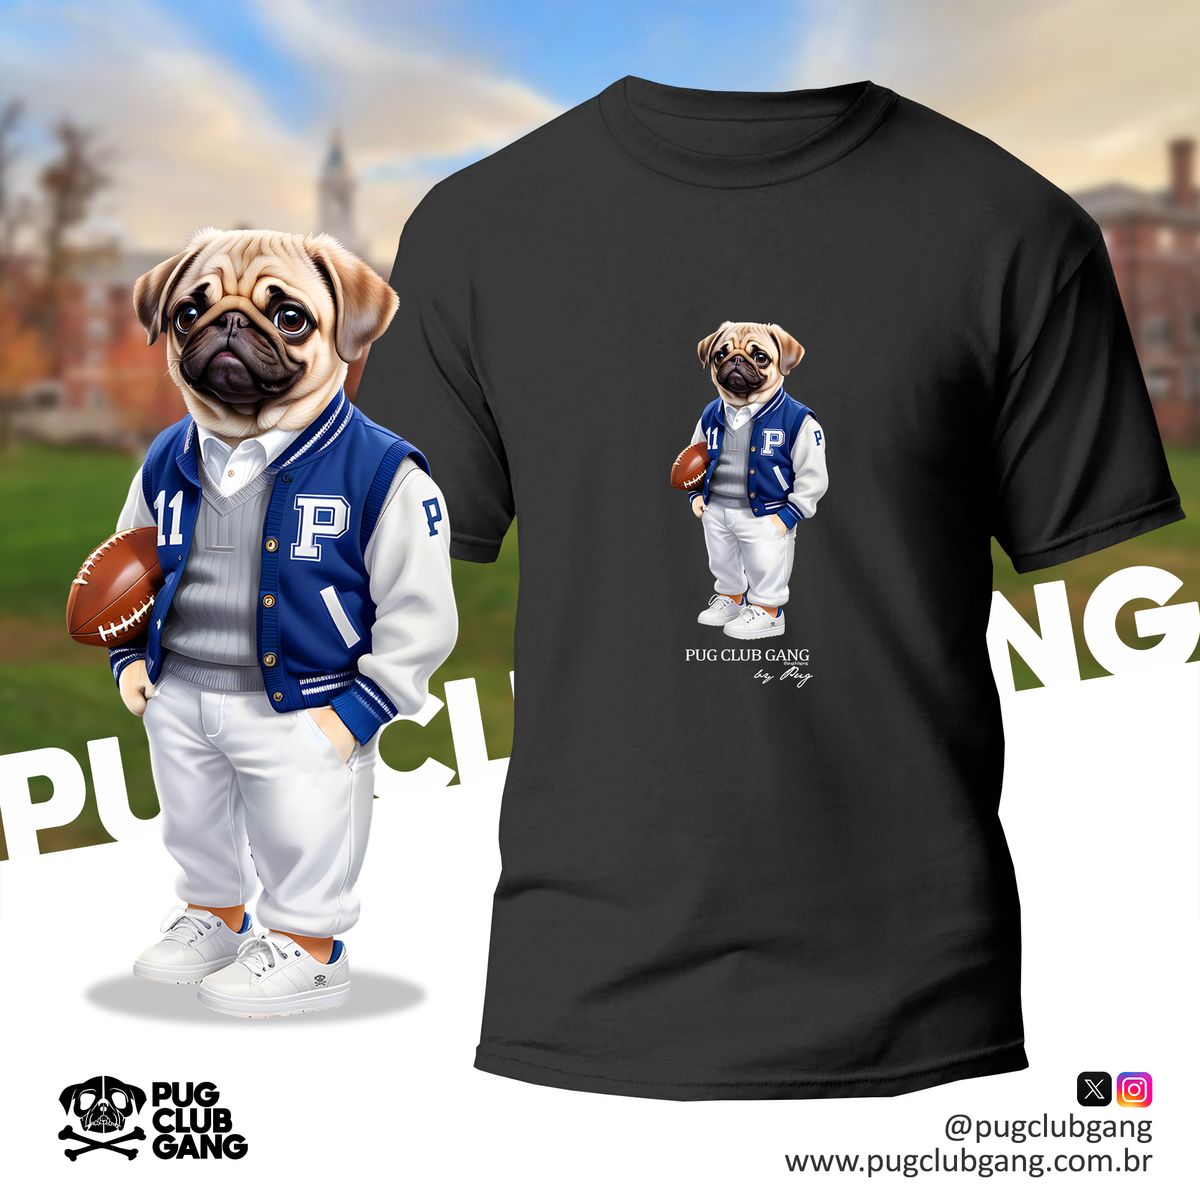 Nome do produto: Camiseta Pug - Universidade Pug